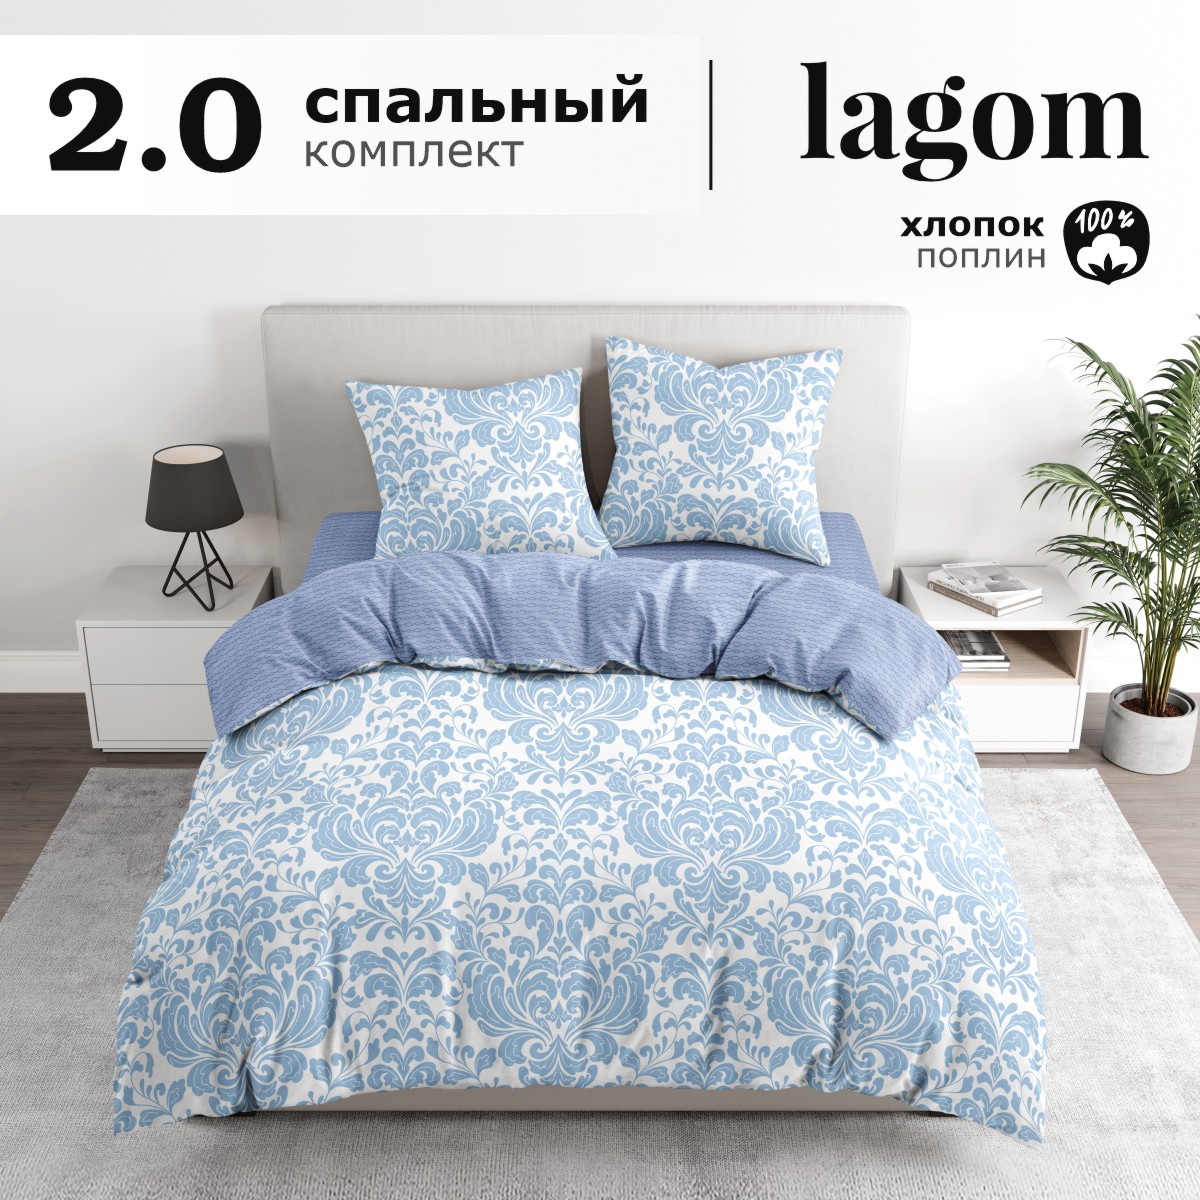 Комплект постельного белья Lagom Сконе, поплин, 2 спальный наволочки 70х70 2 шт